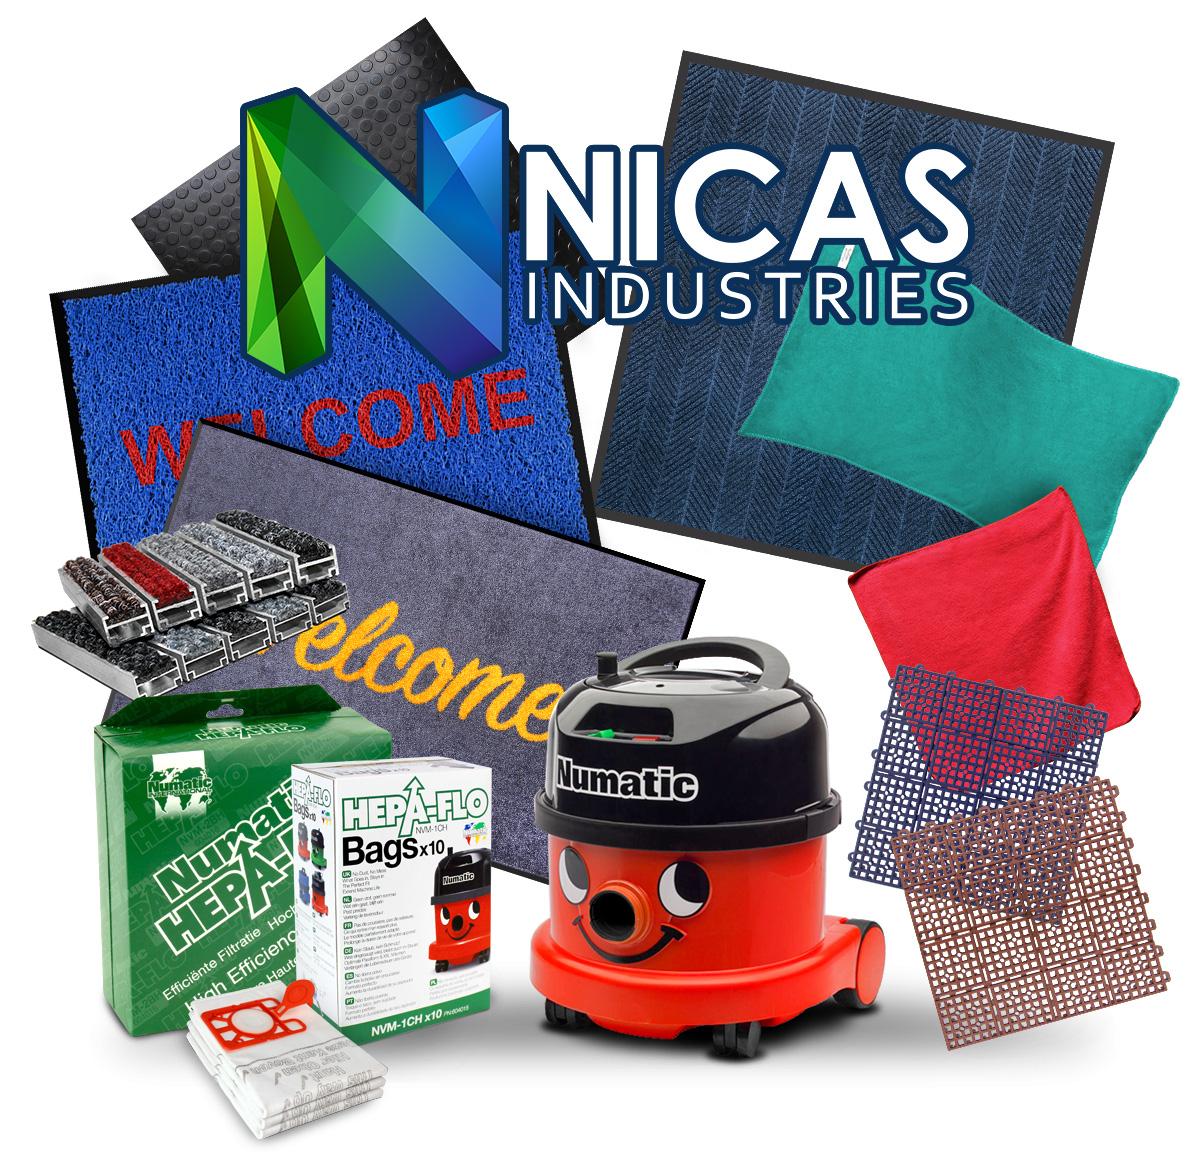 Nicas Industries Sdn Bhd